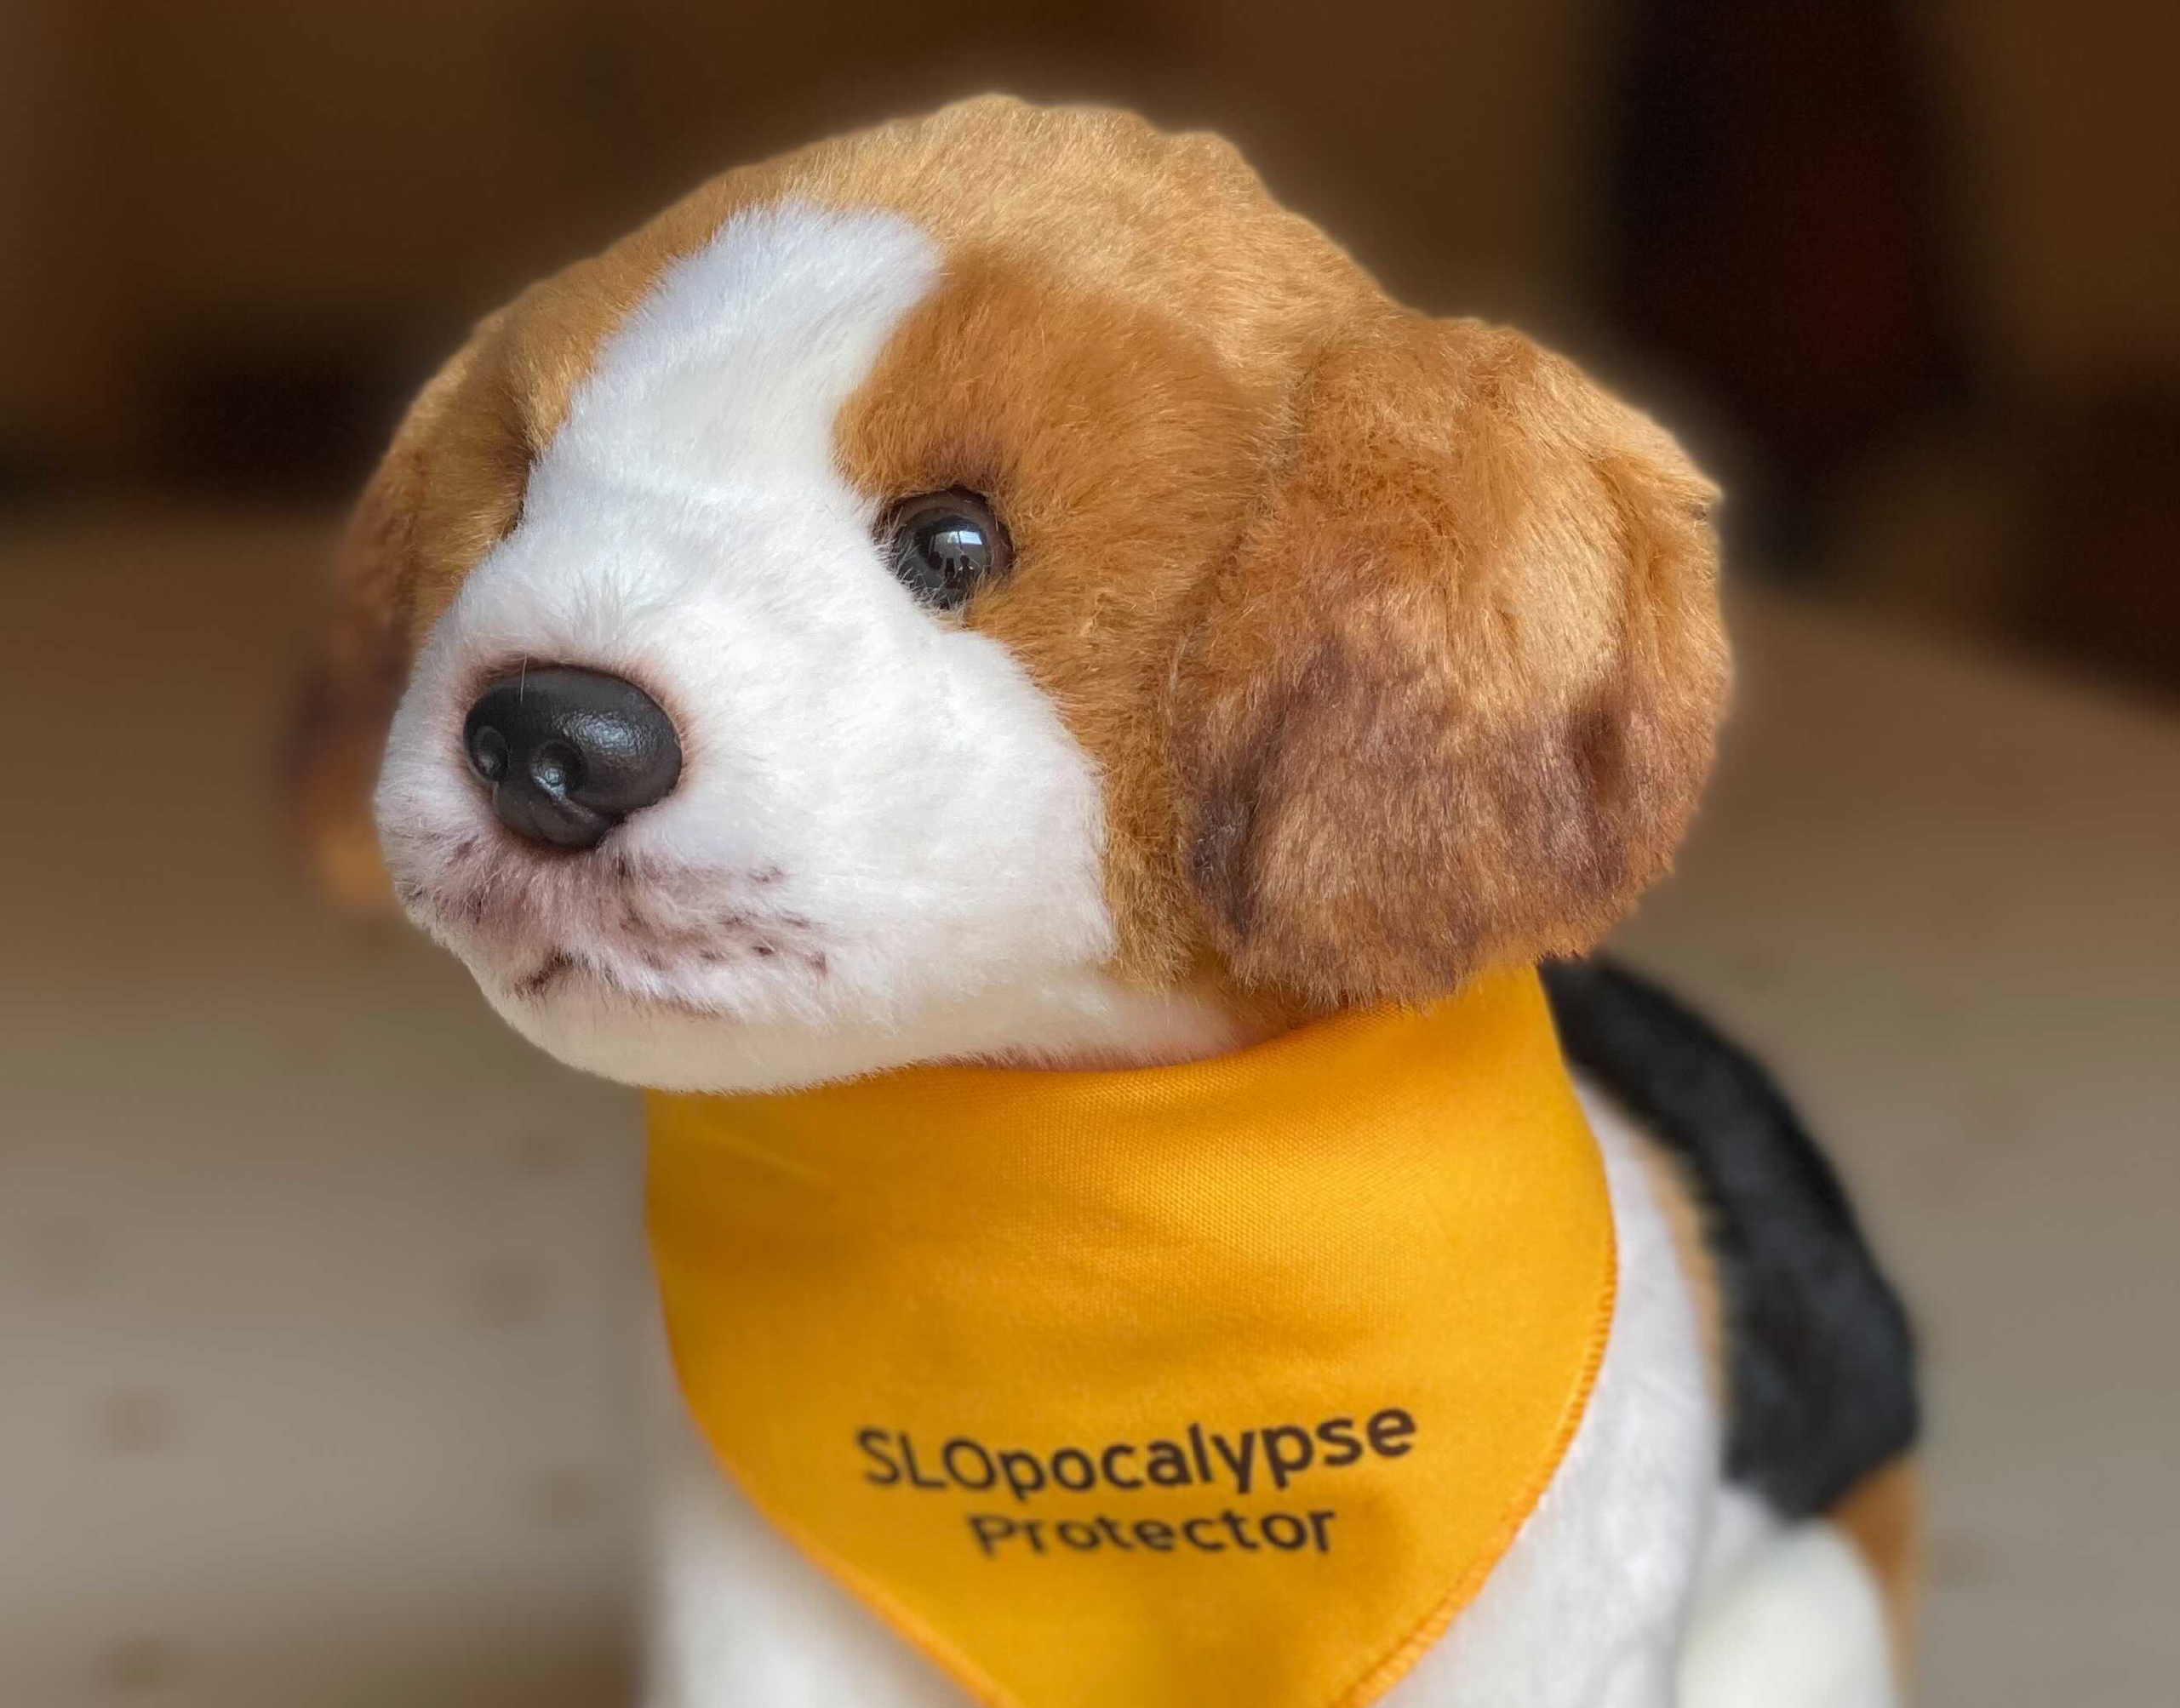 stuffed animal dog wearing yellow bandana with the text "SLOpocalypse Protector"